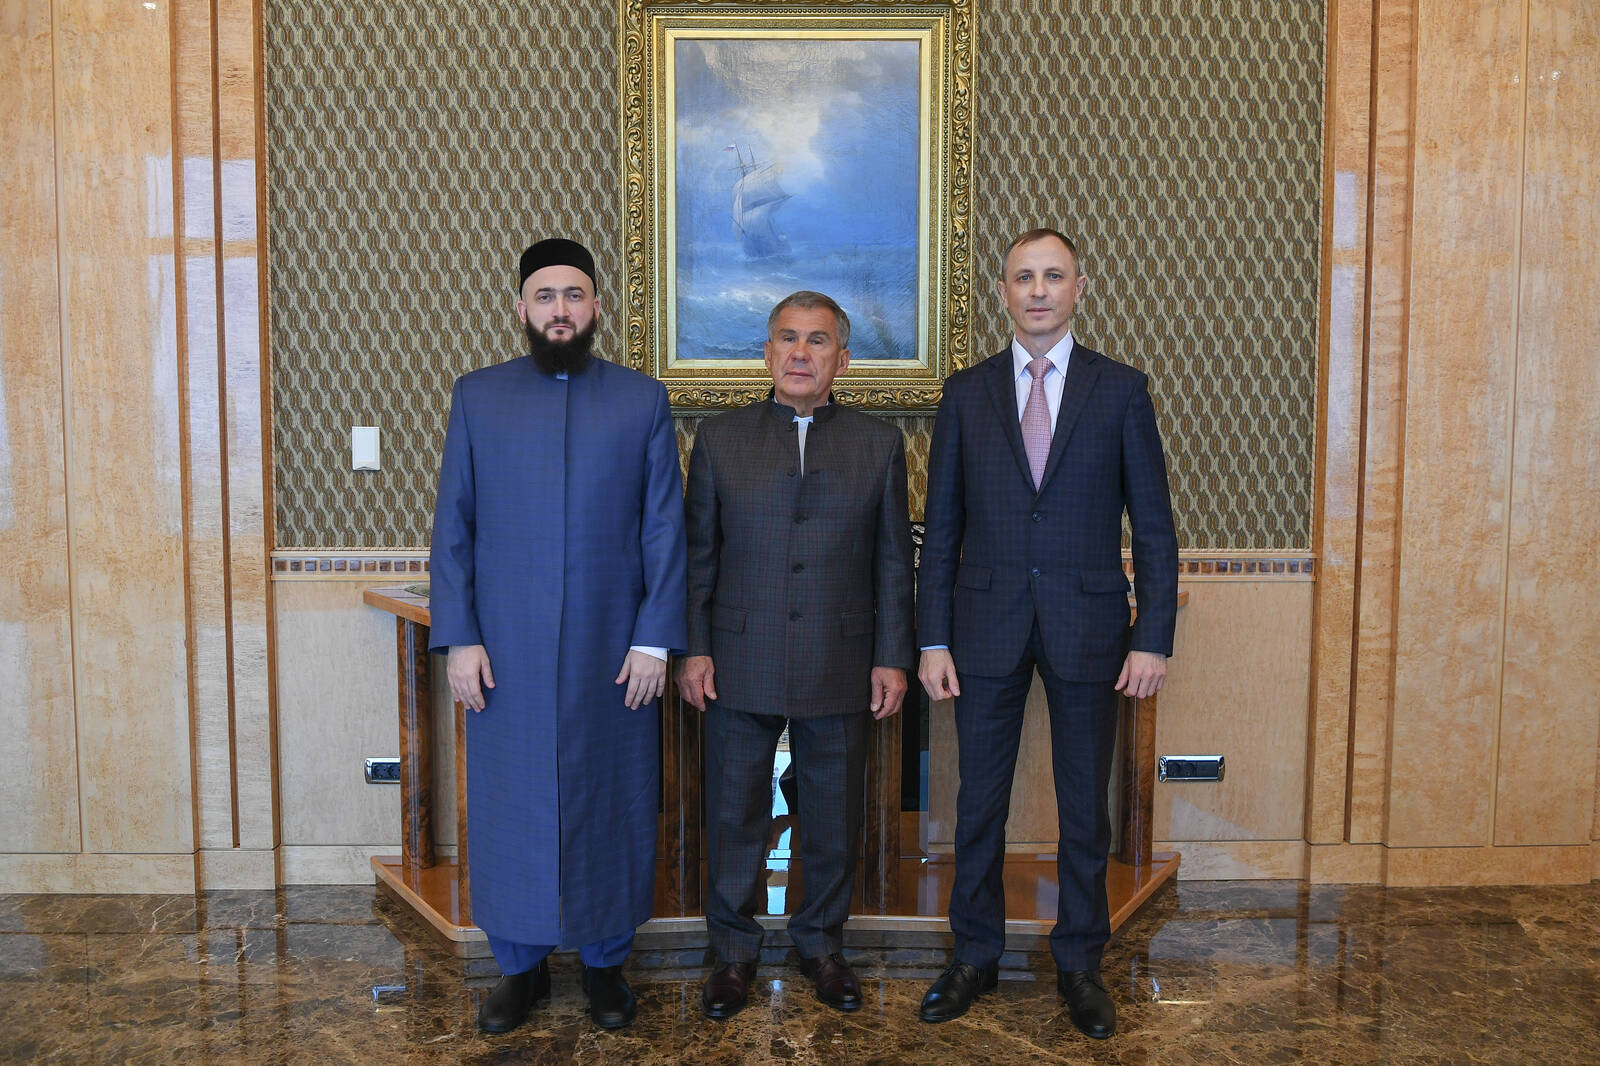 Фото: пресс-служба президента Татарстана